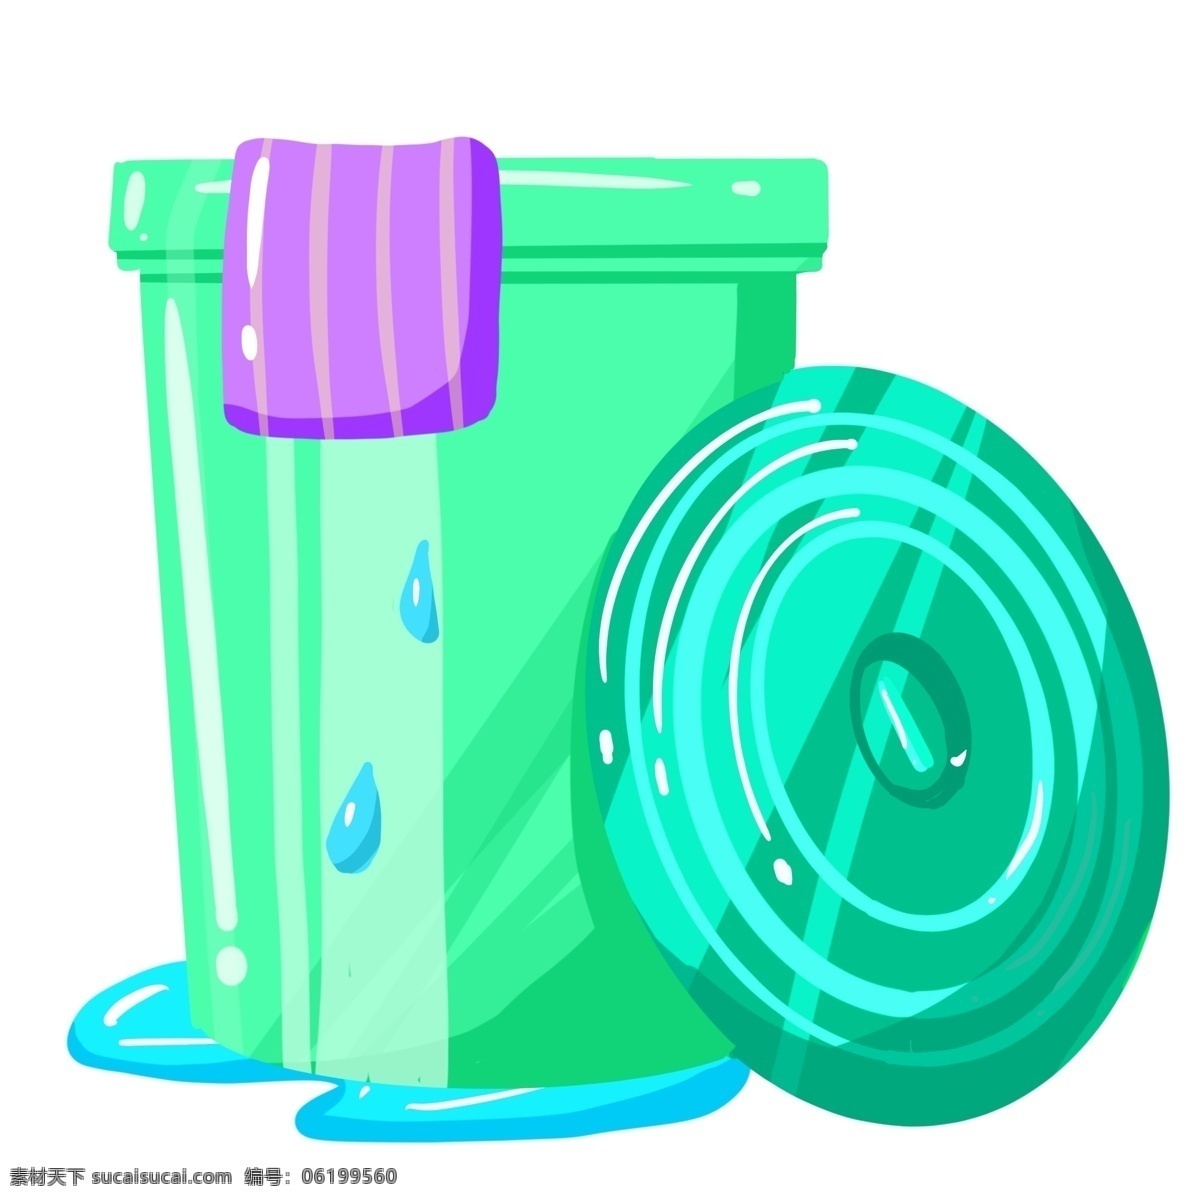 紫色 毛巾 绿色 垃圾桶 世界卫生日 擦拭工具 紫色毛巾 绿色垃圾桶 两个垃圾桶 垃圾桶盖子